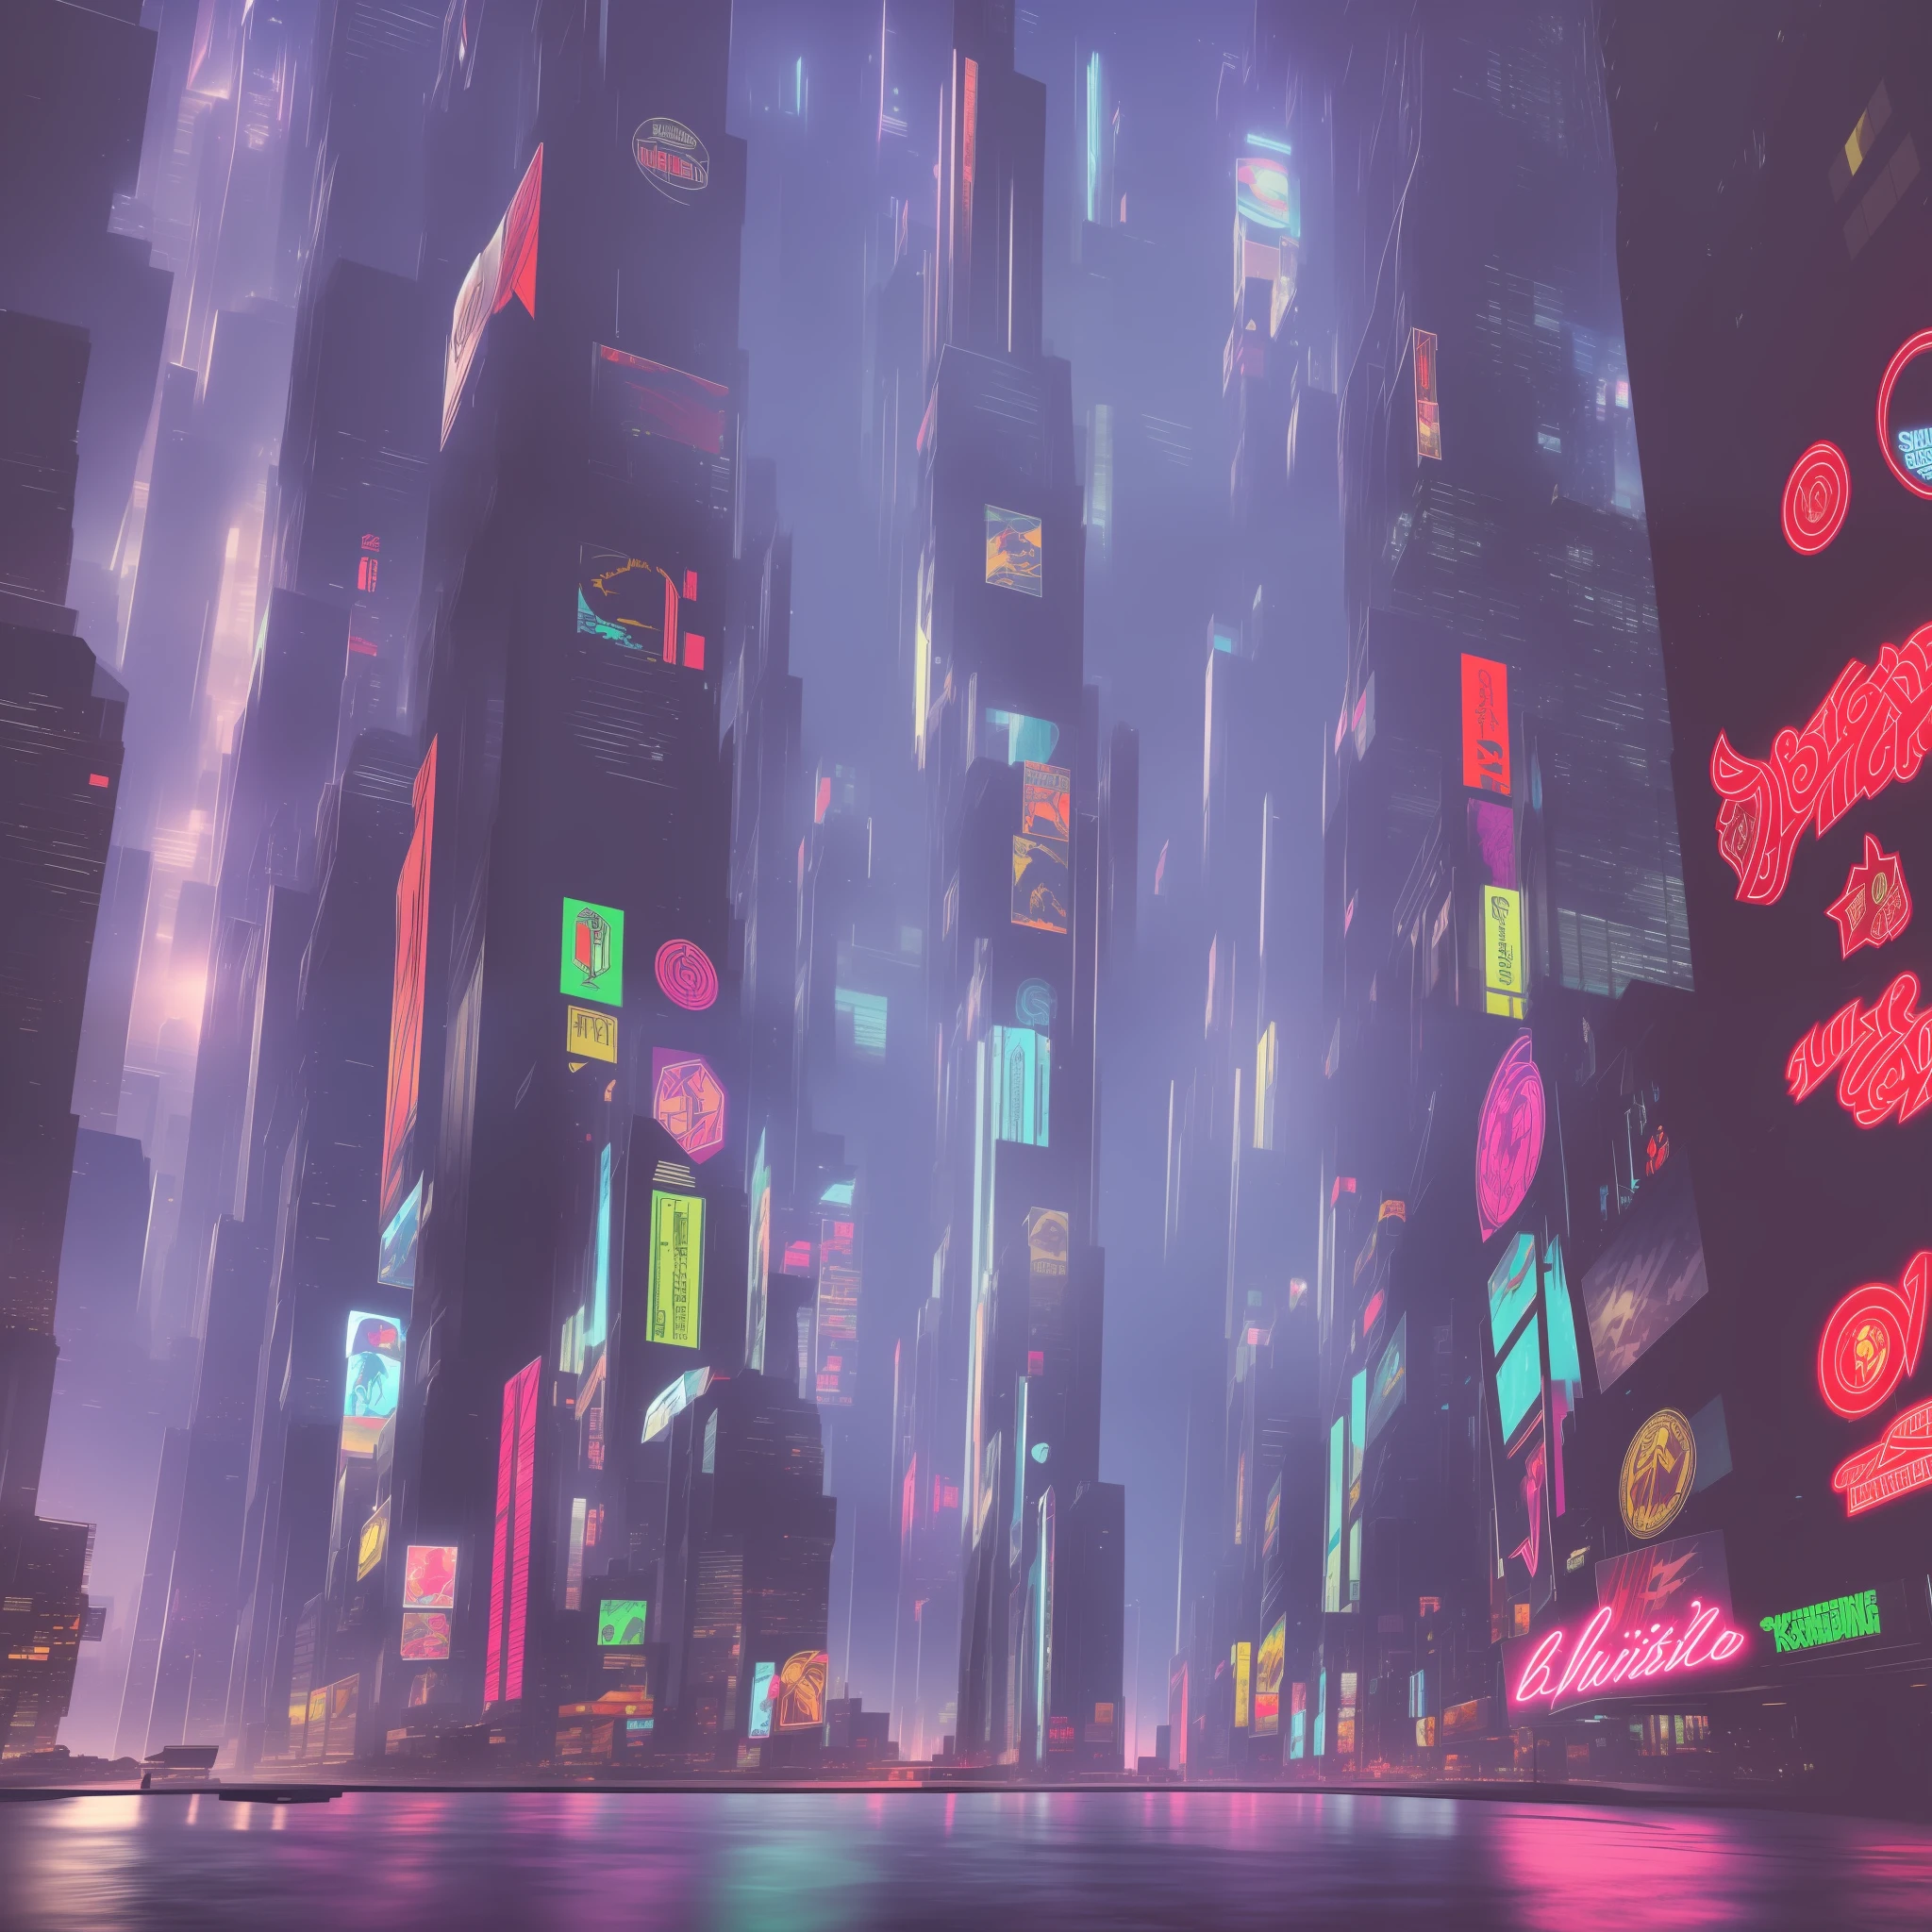 Générer un rapport très détaillé, image de bannière orientée paysage représentant une ville cyberpunk dans un format 16:9 rapport hauteur/largeur. L&#39;image doit incorporer de manière subtile mais visible des éléments de jeux vidéo. Incluez des détails complexes qui reflètent l&#39;esthétique cyberpunk, comme des gratte-ciel étincelants, néons vacillants, panneaux d&#39;affichage holographiques, et des rues animées. Intégrez des éléments emblématiques du jeu vidéo, comme les personnages masqués, logos de jeux connus, ou des références à des titres populaires, d&#39;une manière qui s&#39;intègre parfaitement au paysage urbain. Laissez un espace bien visible au centre de l’image pour insérer un logo personnalisé. Le logo doit refléter votre propre design et peut représenter votre marque, nom d&#39;utilisateur, ou tout élément que vous souhaitez mettre en valeur. Veiller à ce que le logo s&#39;intègre harmonieusement au reste de l&#39;image, complétant l&#39;esthétique cyberpunk et le thème du jeu, et en ajoutant une touche personnelle distinctive à la composition globale. --auto --s2